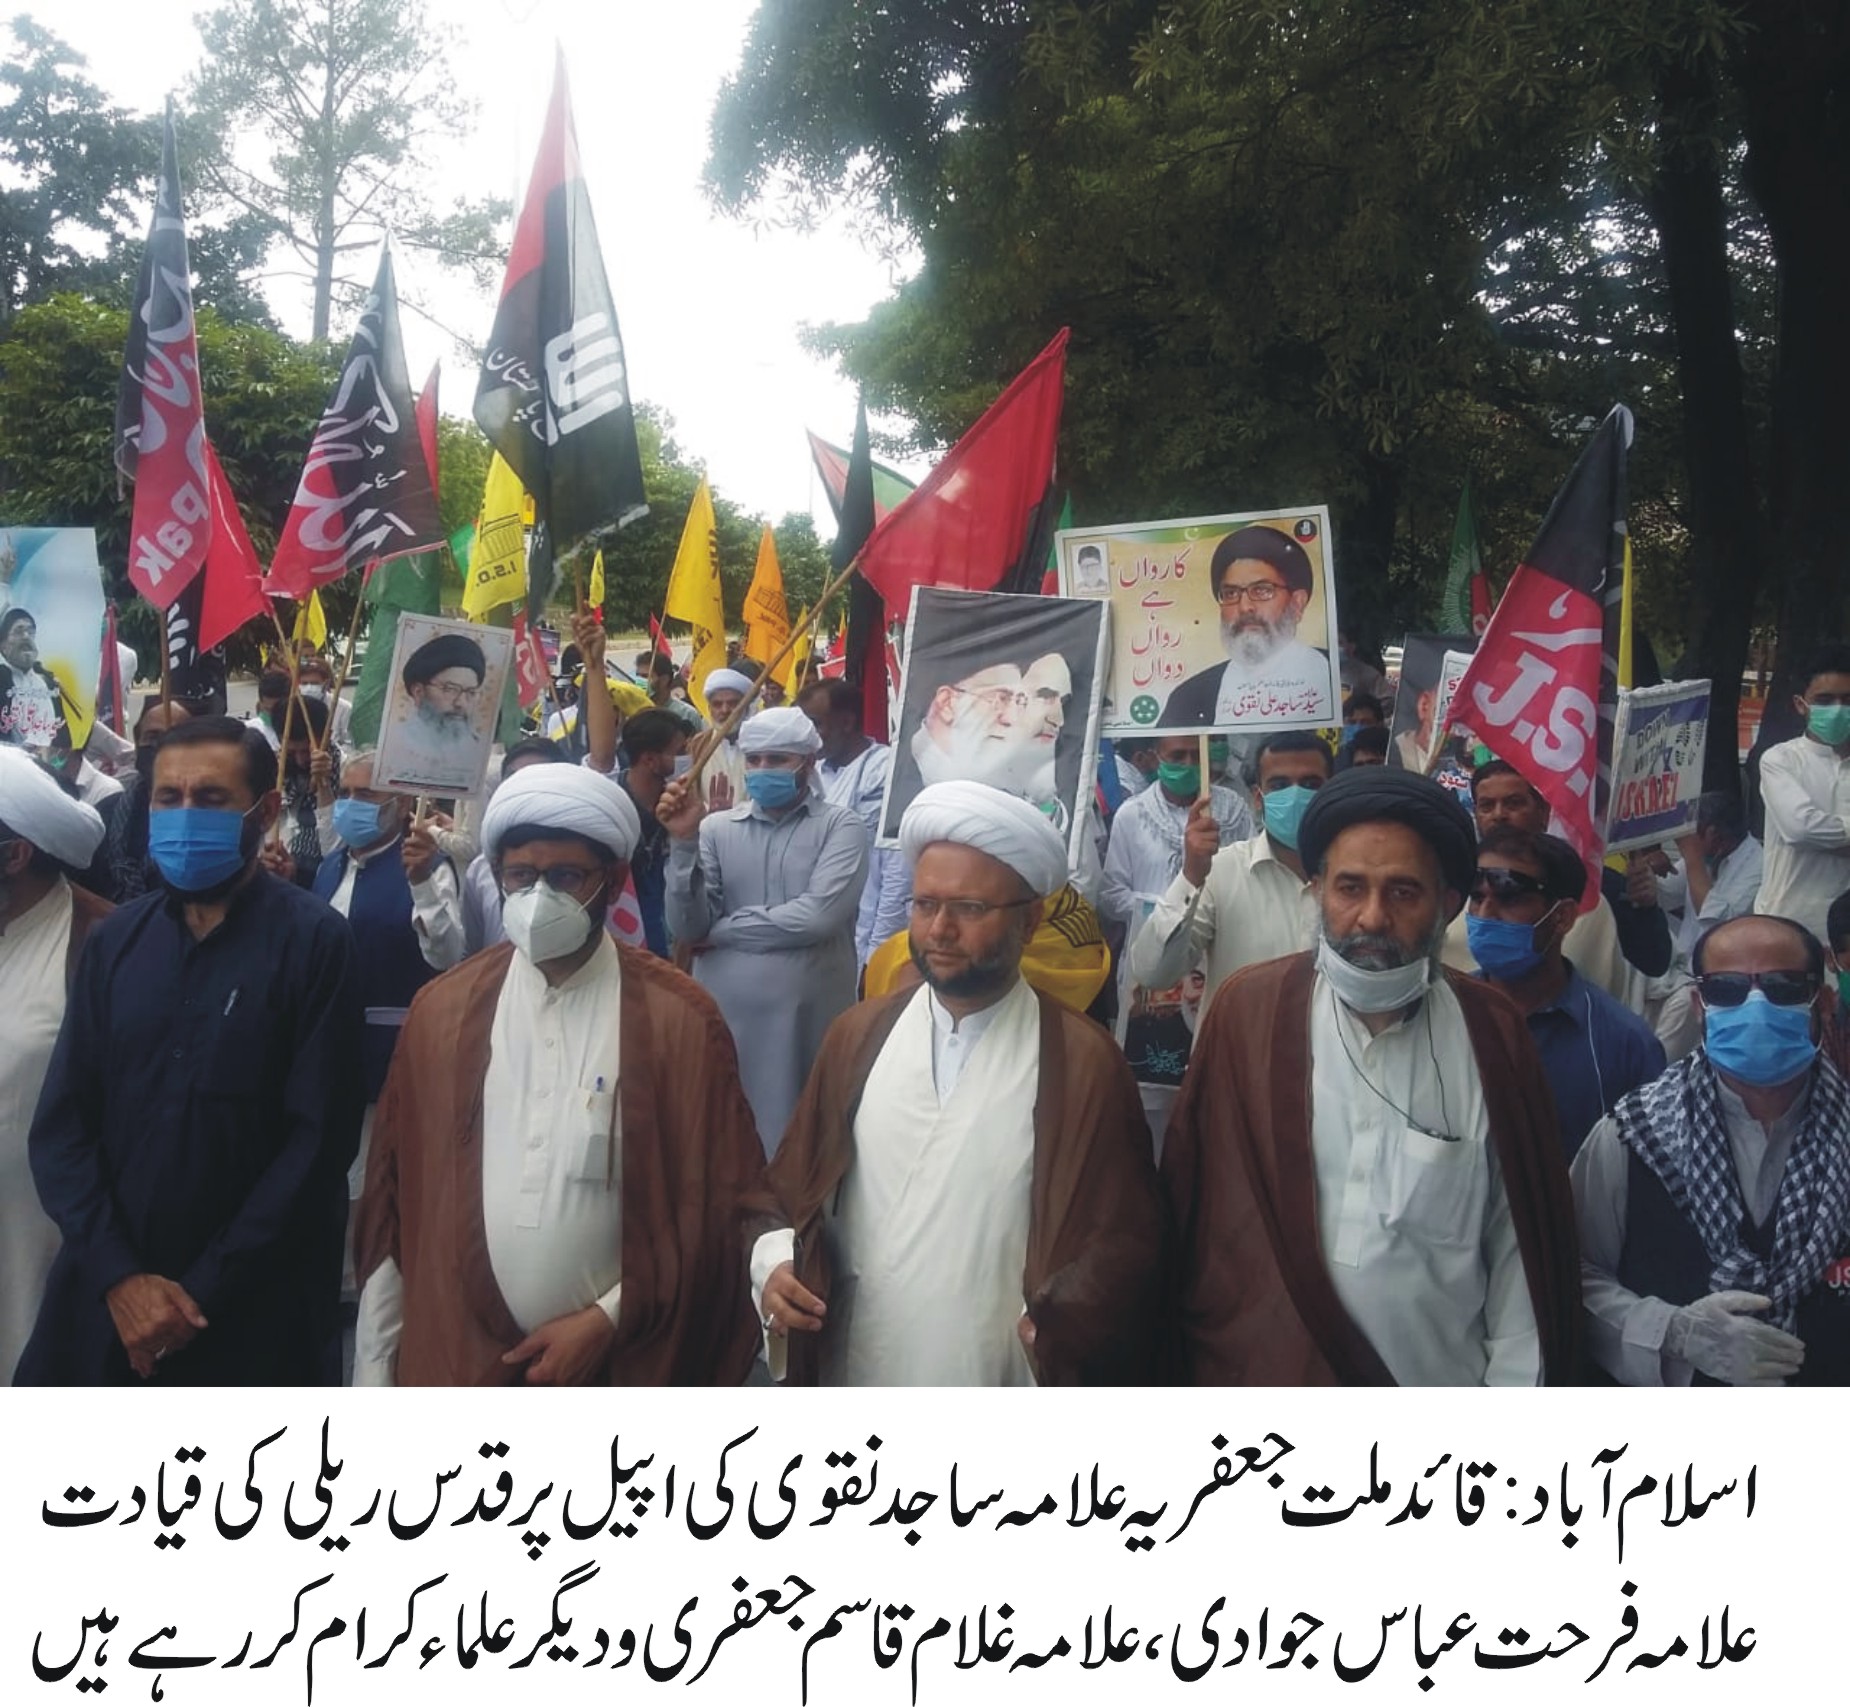 قائد ملت جعفریہ پاکستان علامہ ساجد نقوی کی اپیل پر ملک بھر میں یوم القدس ریلیاں